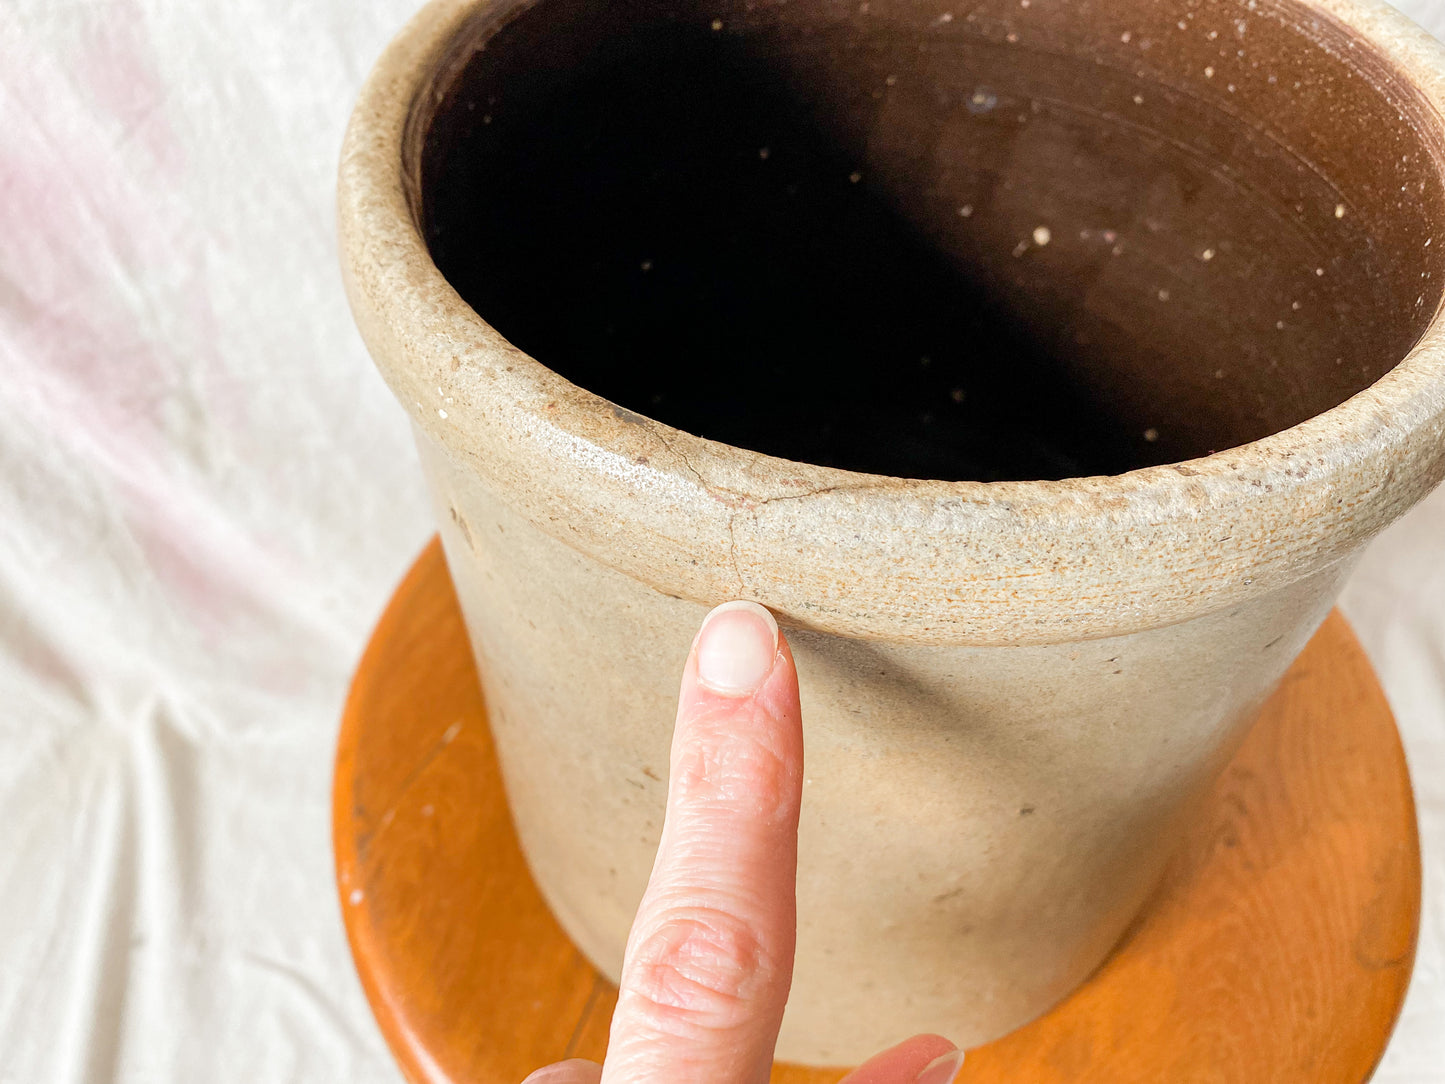 Antique Primitive Greige Salt Glazed Crock | Rustic Farmhouse Kitchen | Antique Stoneware Jar